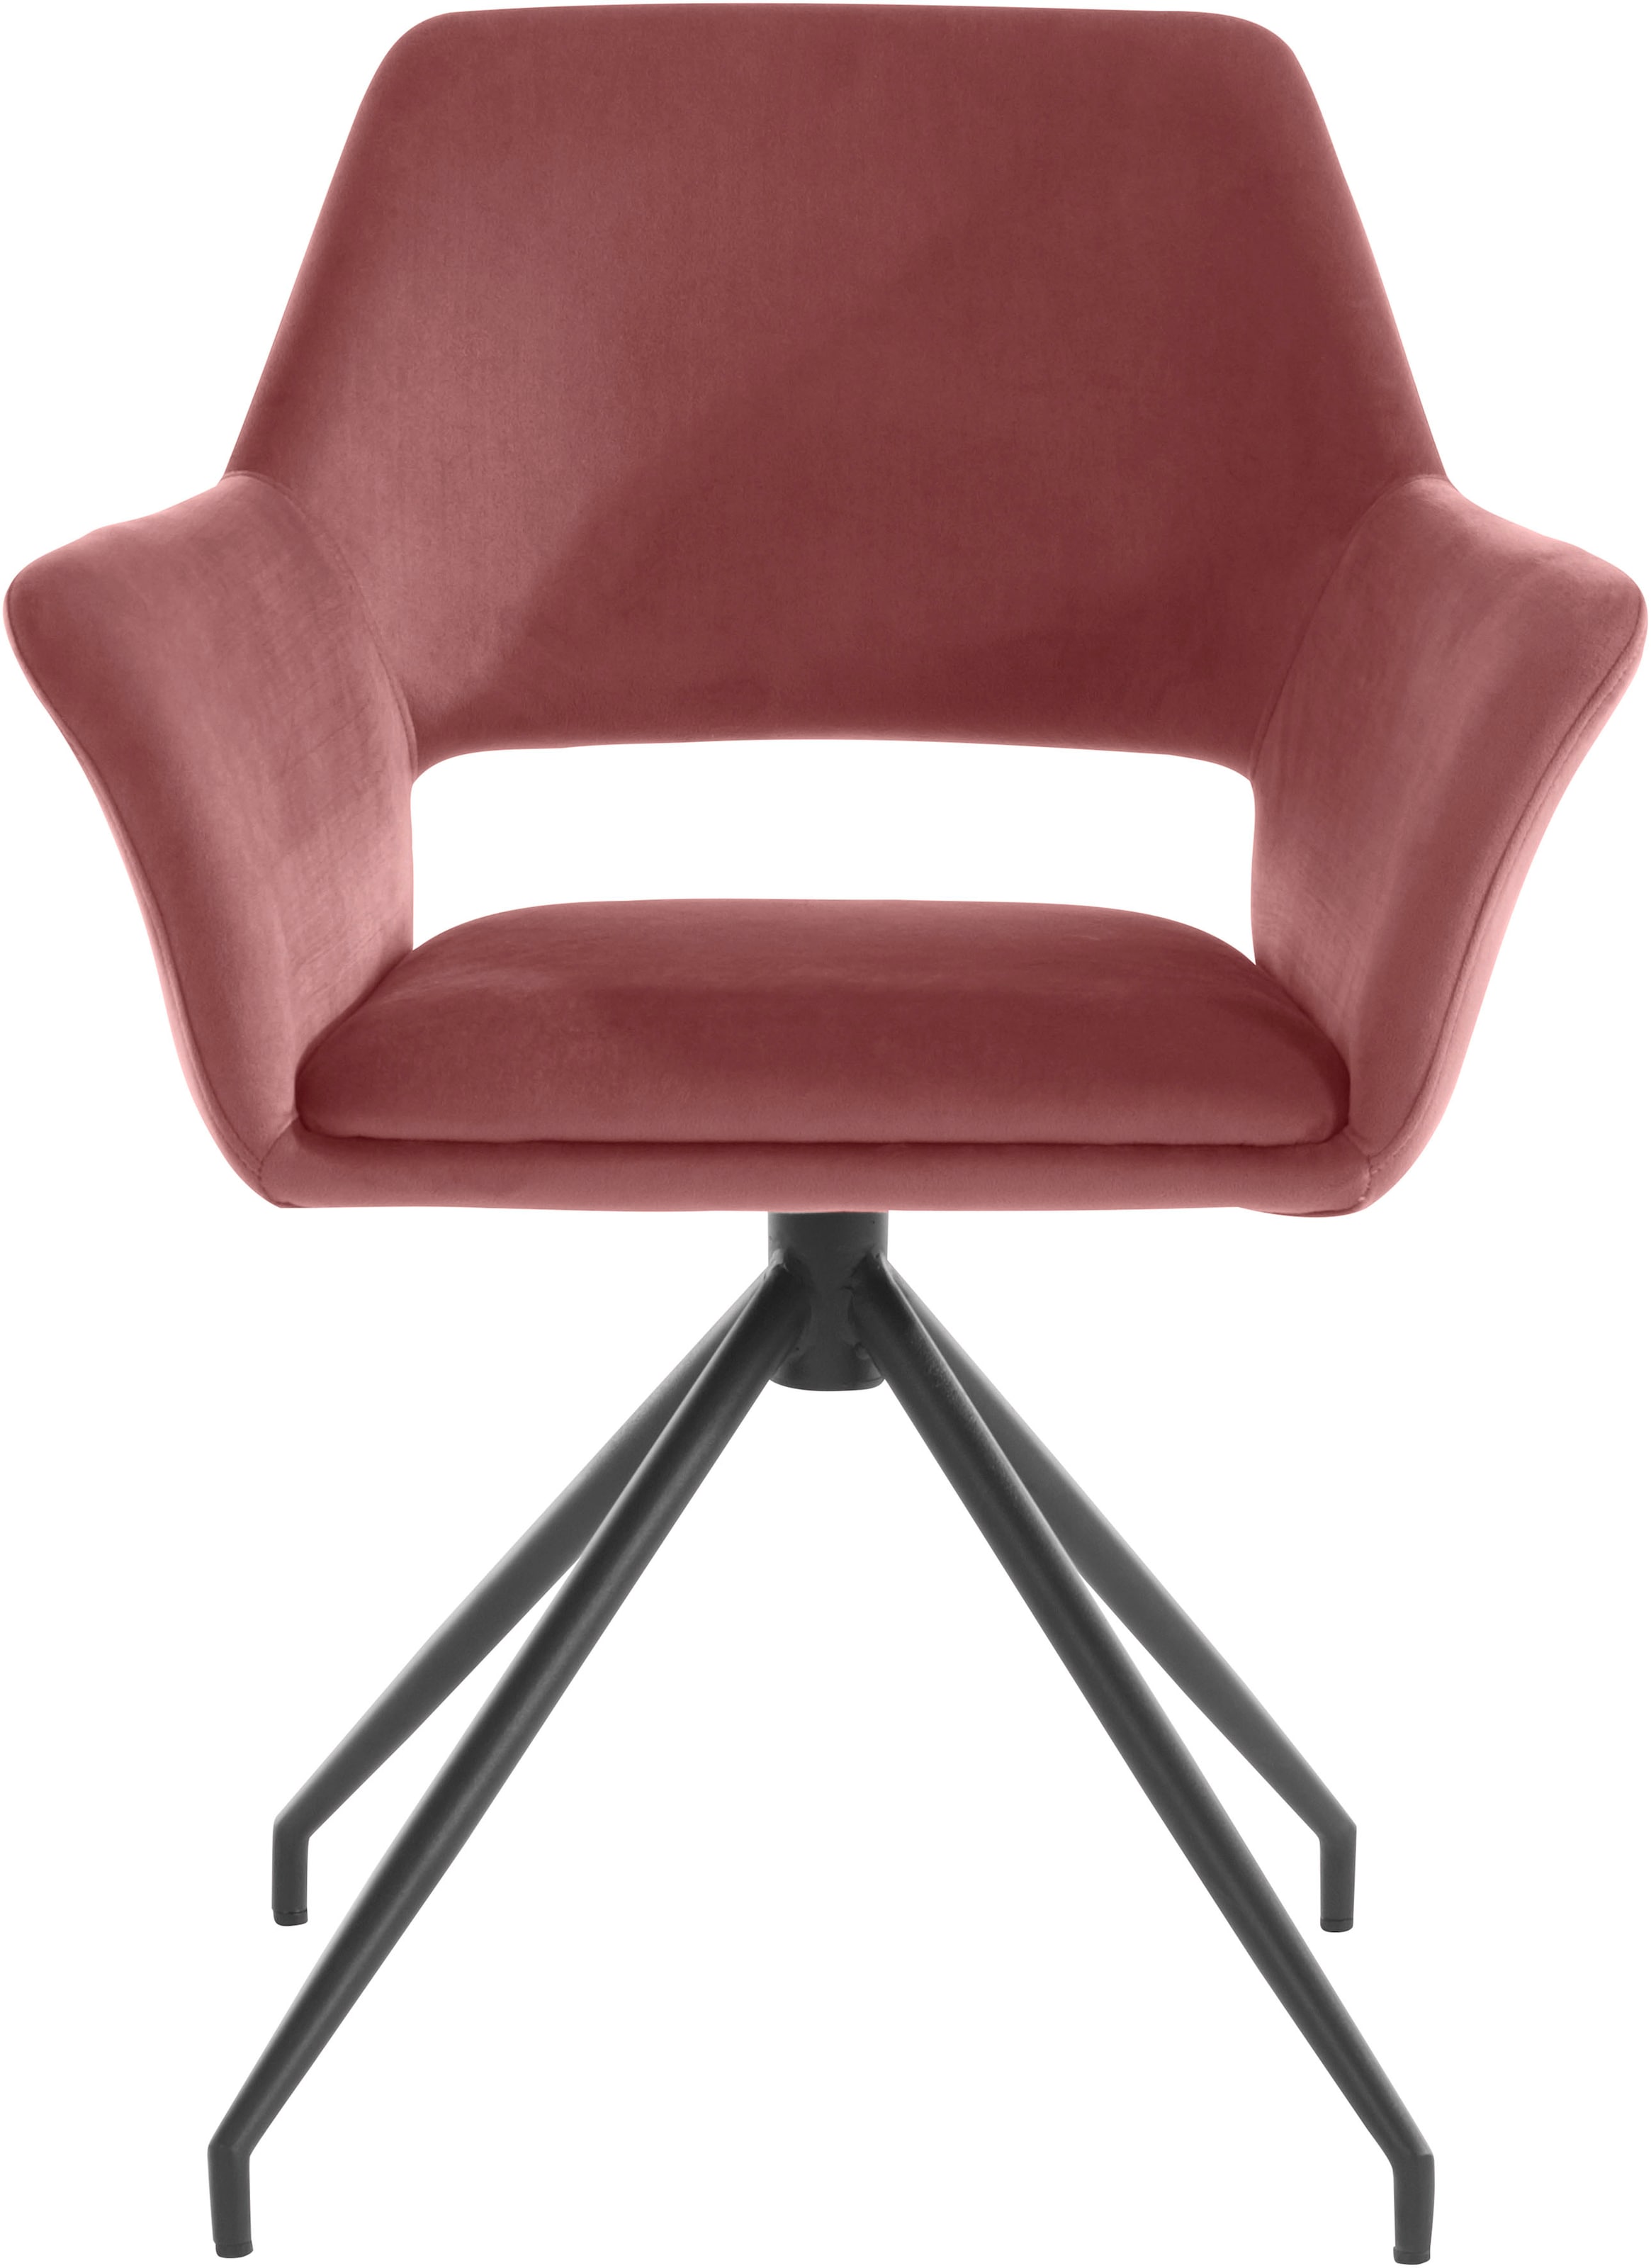 Stoff-Stuhl online kaufen | jetzt Schöne bei OTTO Stoff-Stühle